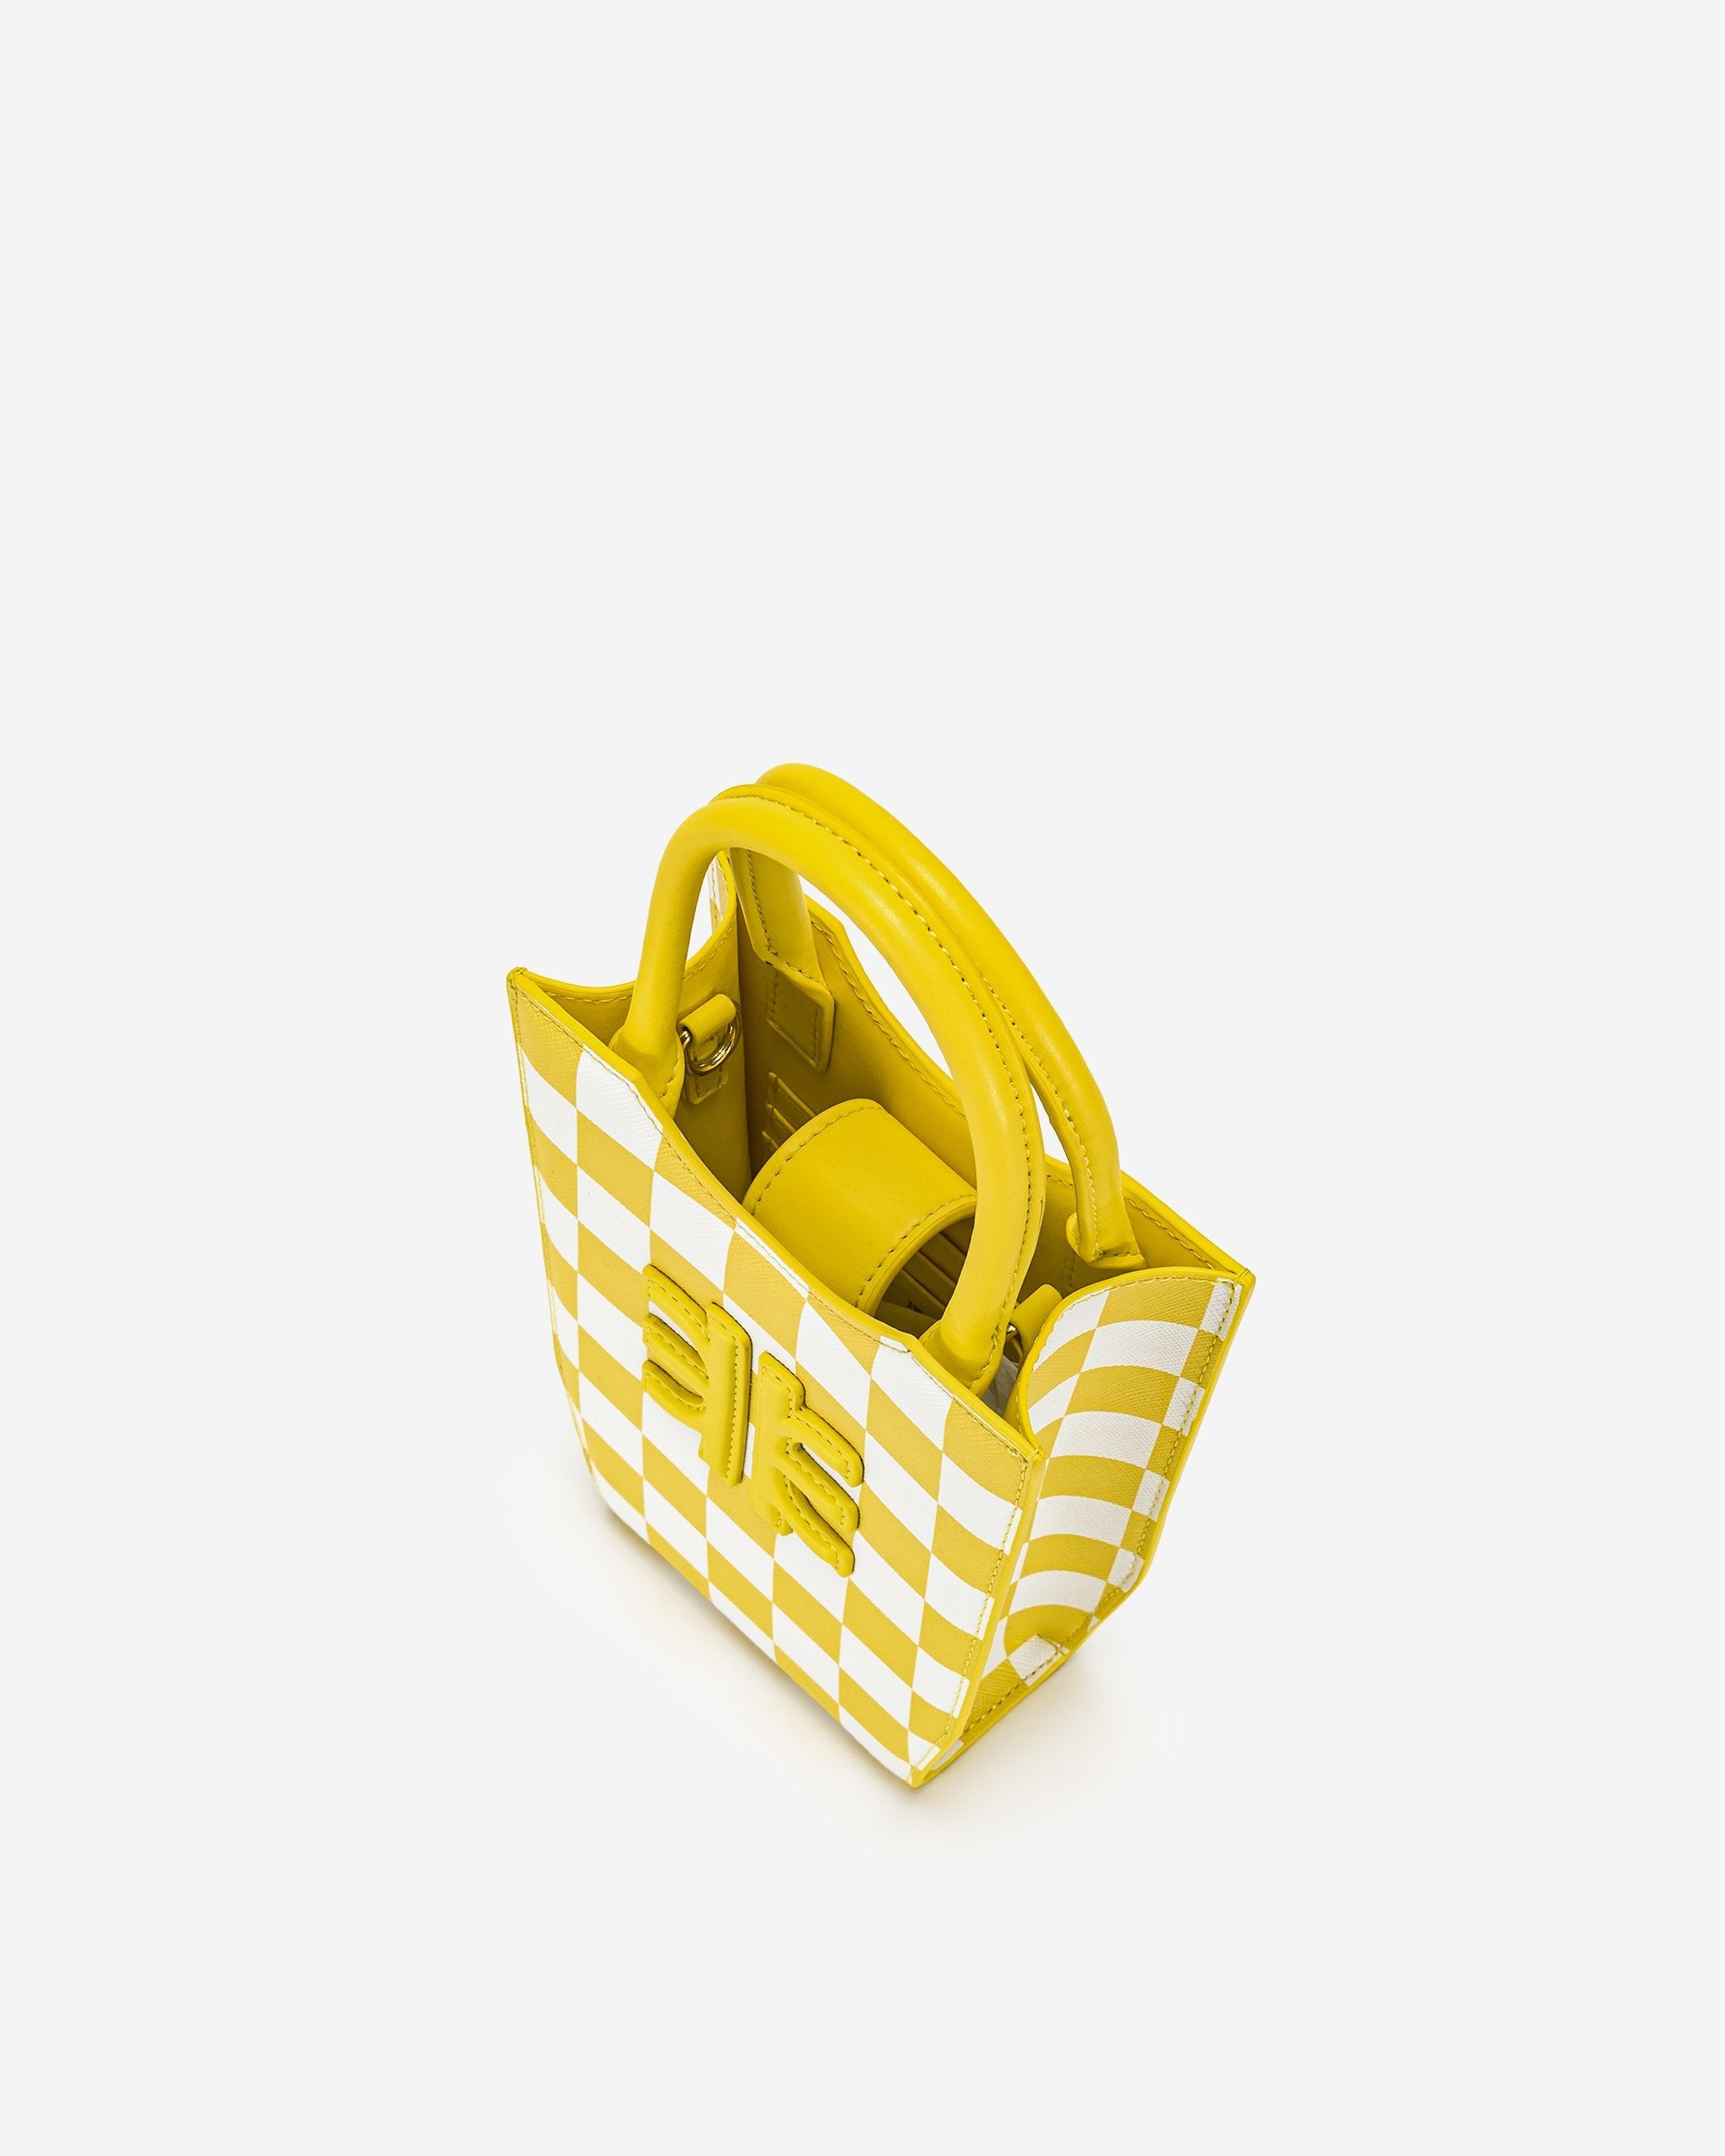 FEI 棋盤格手機包 - 黃色 & 白色